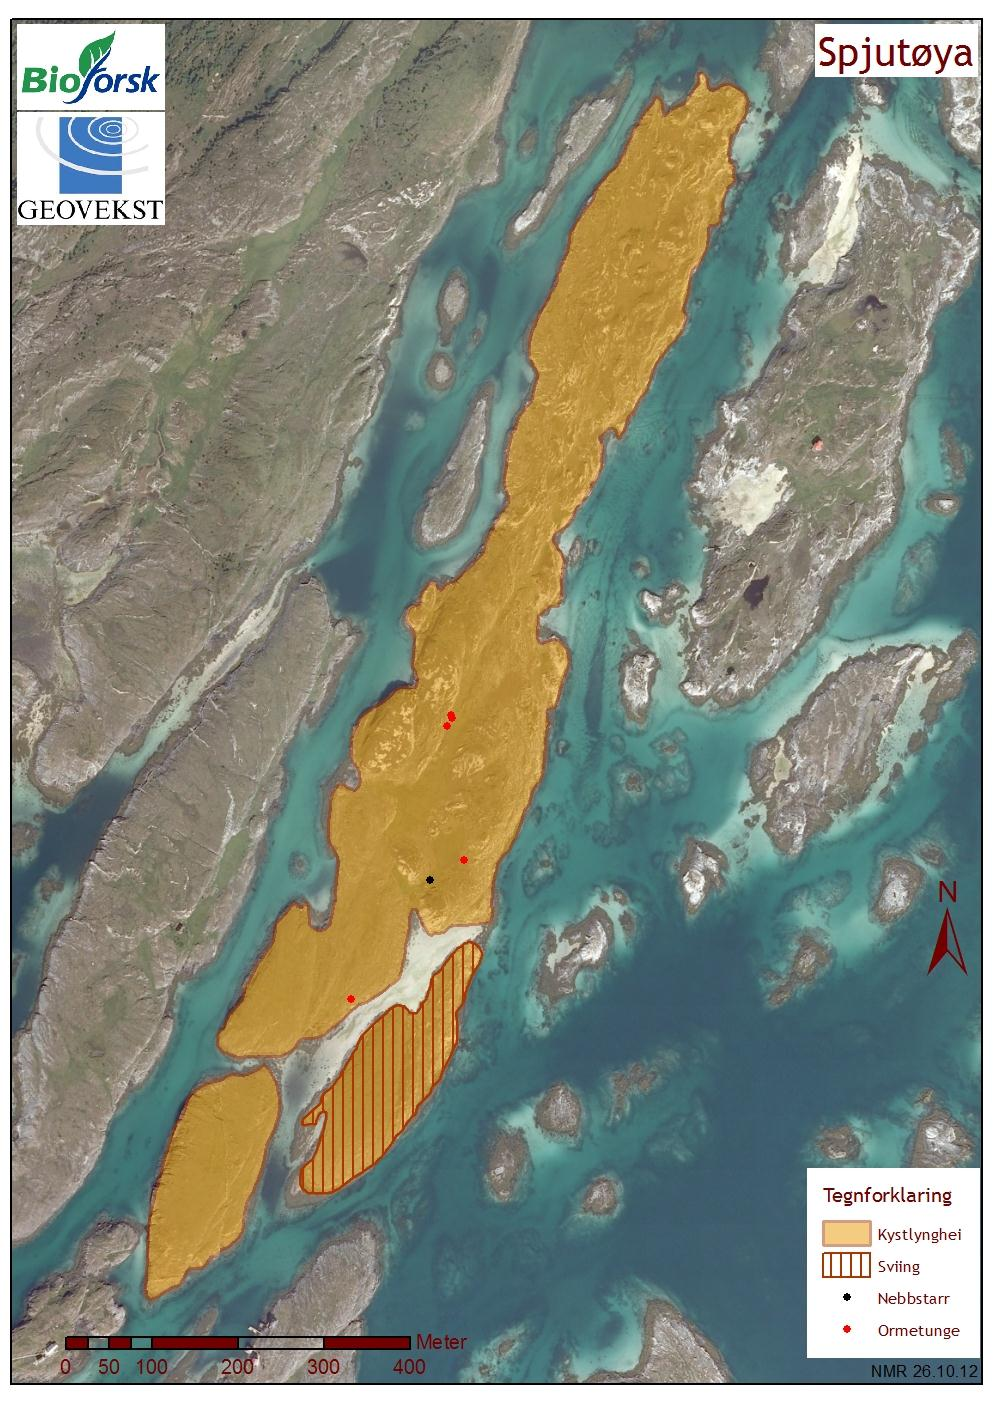 Vedlegg 1 - Ortofoto/kart Figur 1. Oversikt over avgrensingen av kystlynghei-lokaliteten på Spjutøya.